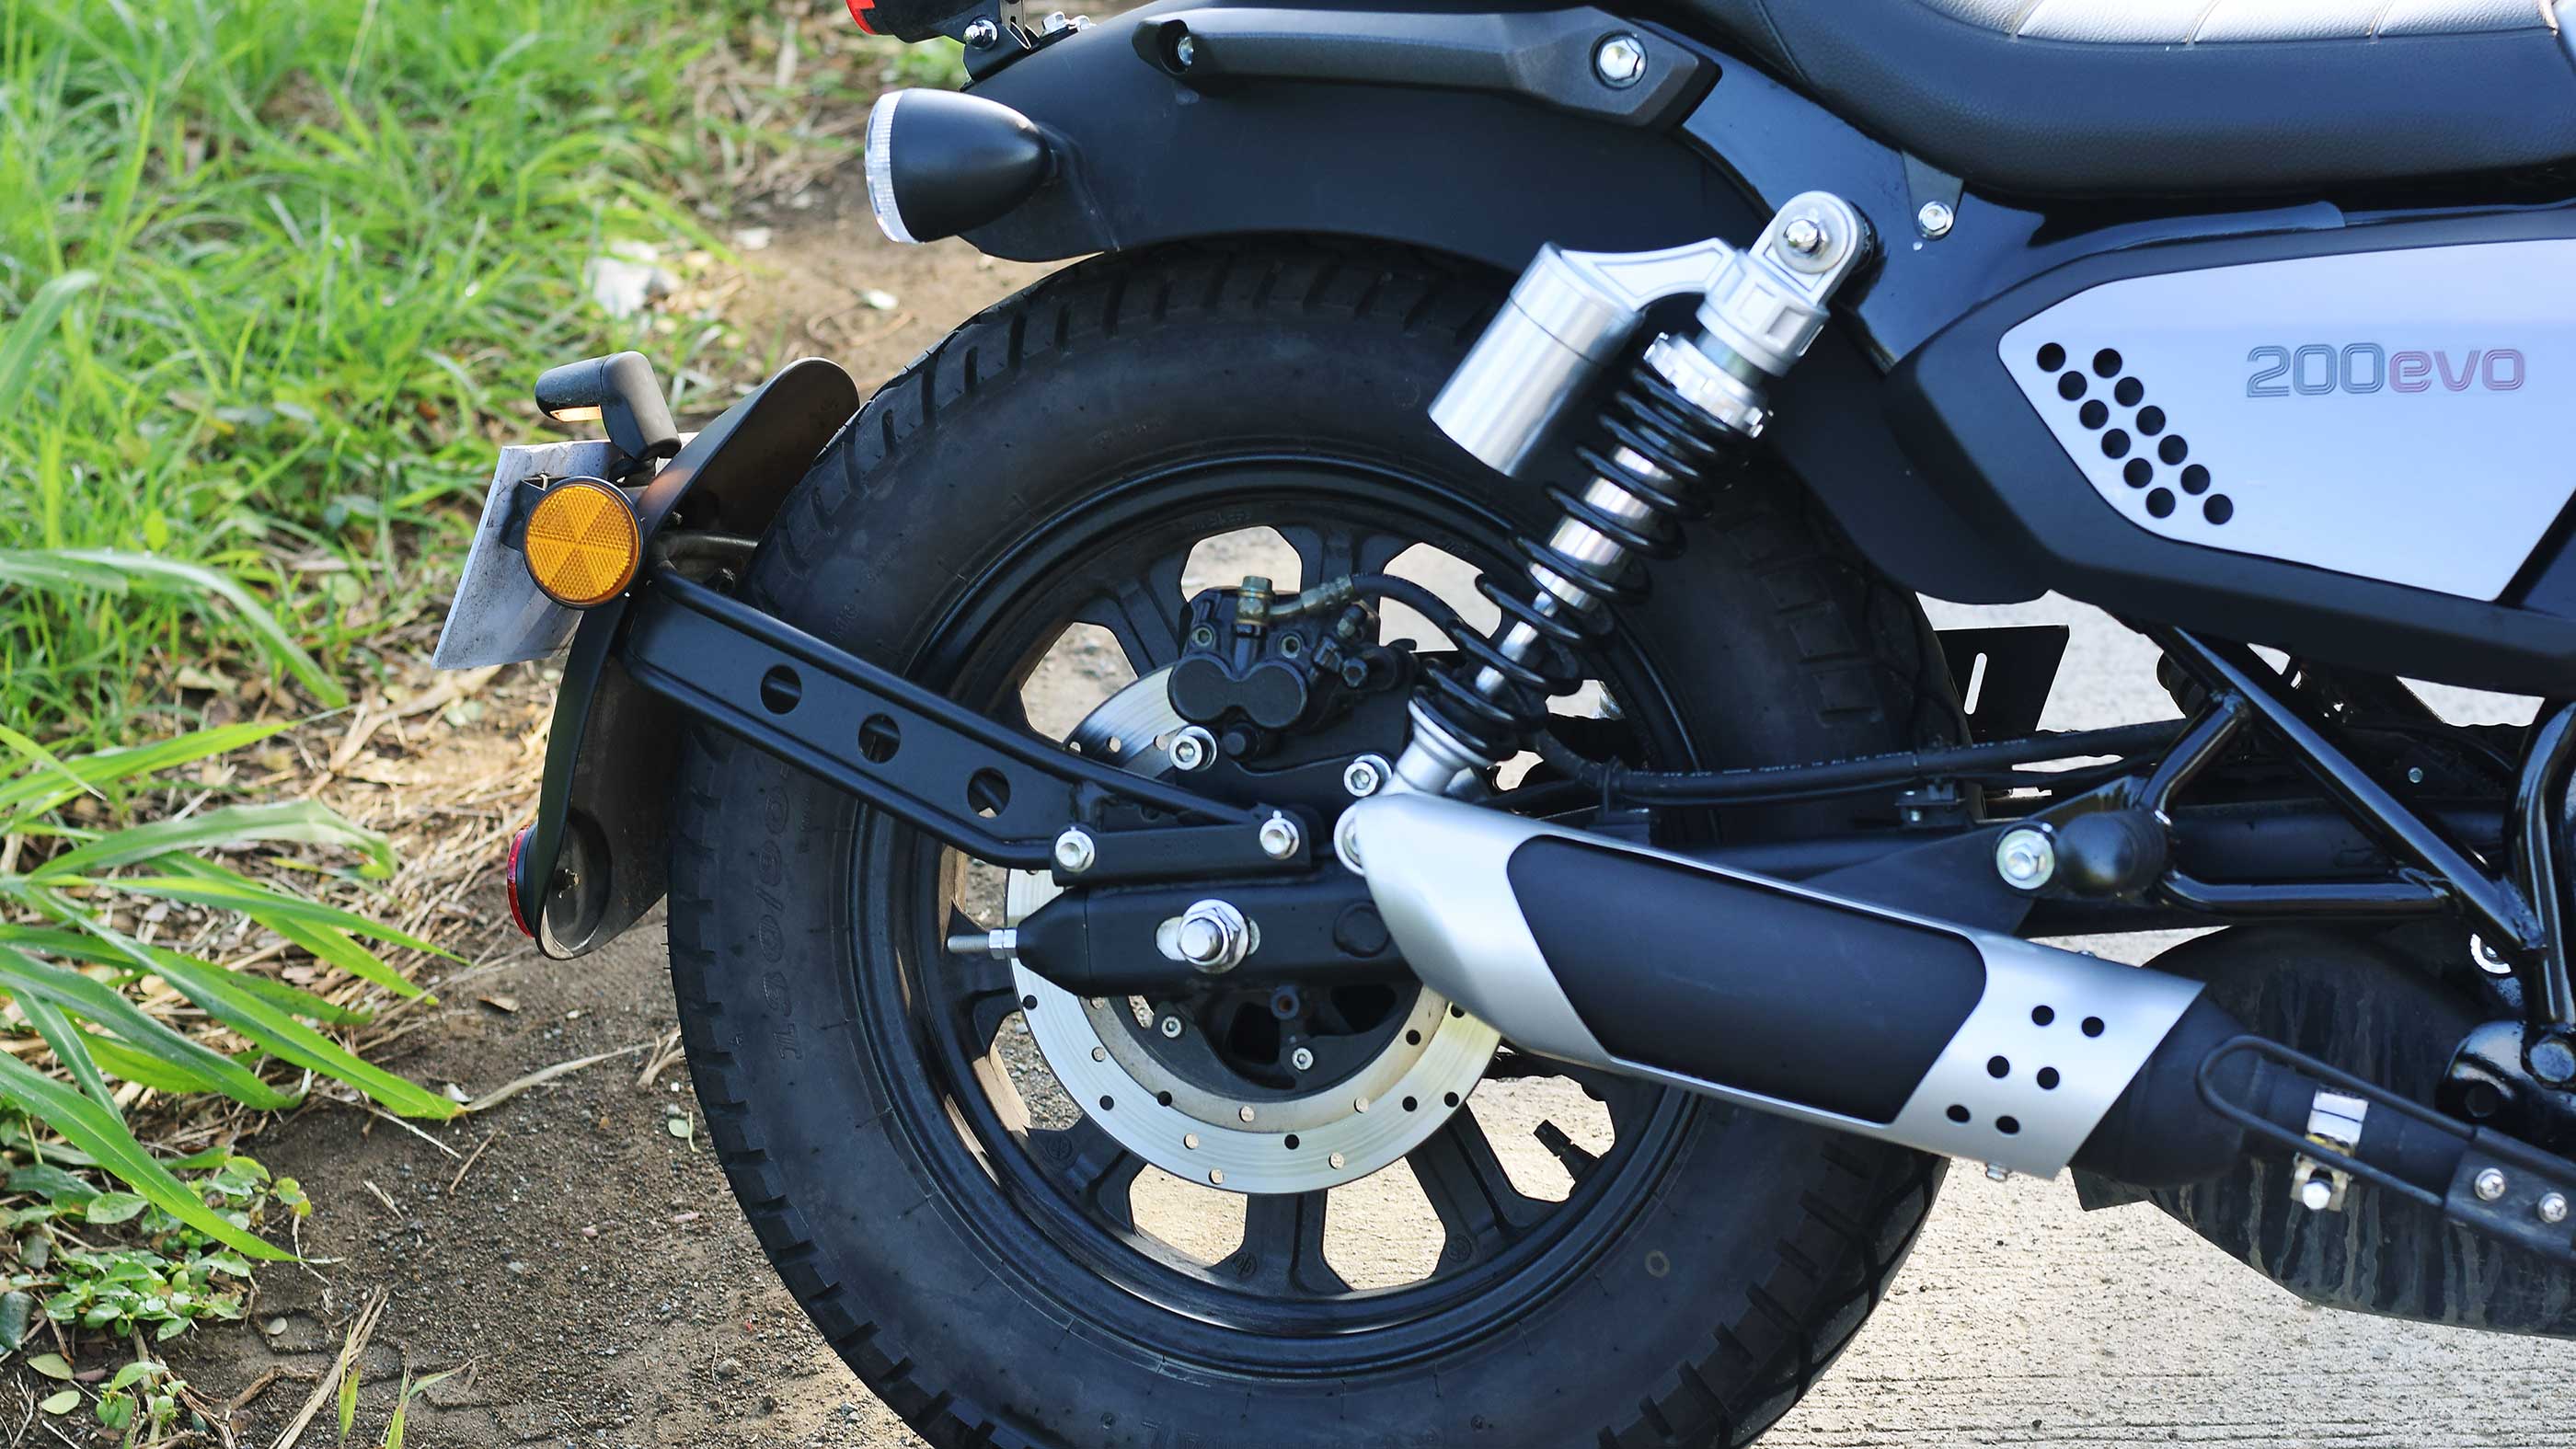 The Benelli Motobi 200 Evo rear tire and suspensions